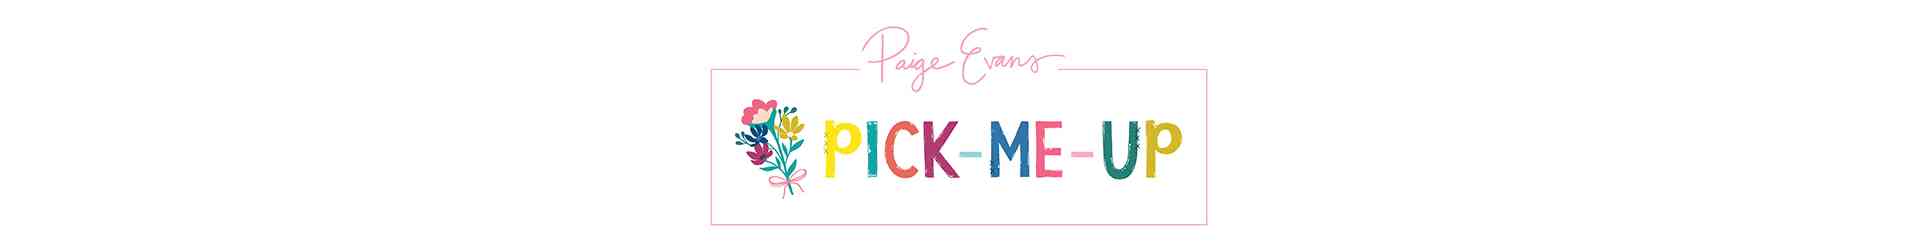 PICK ME UP - Paige Evans